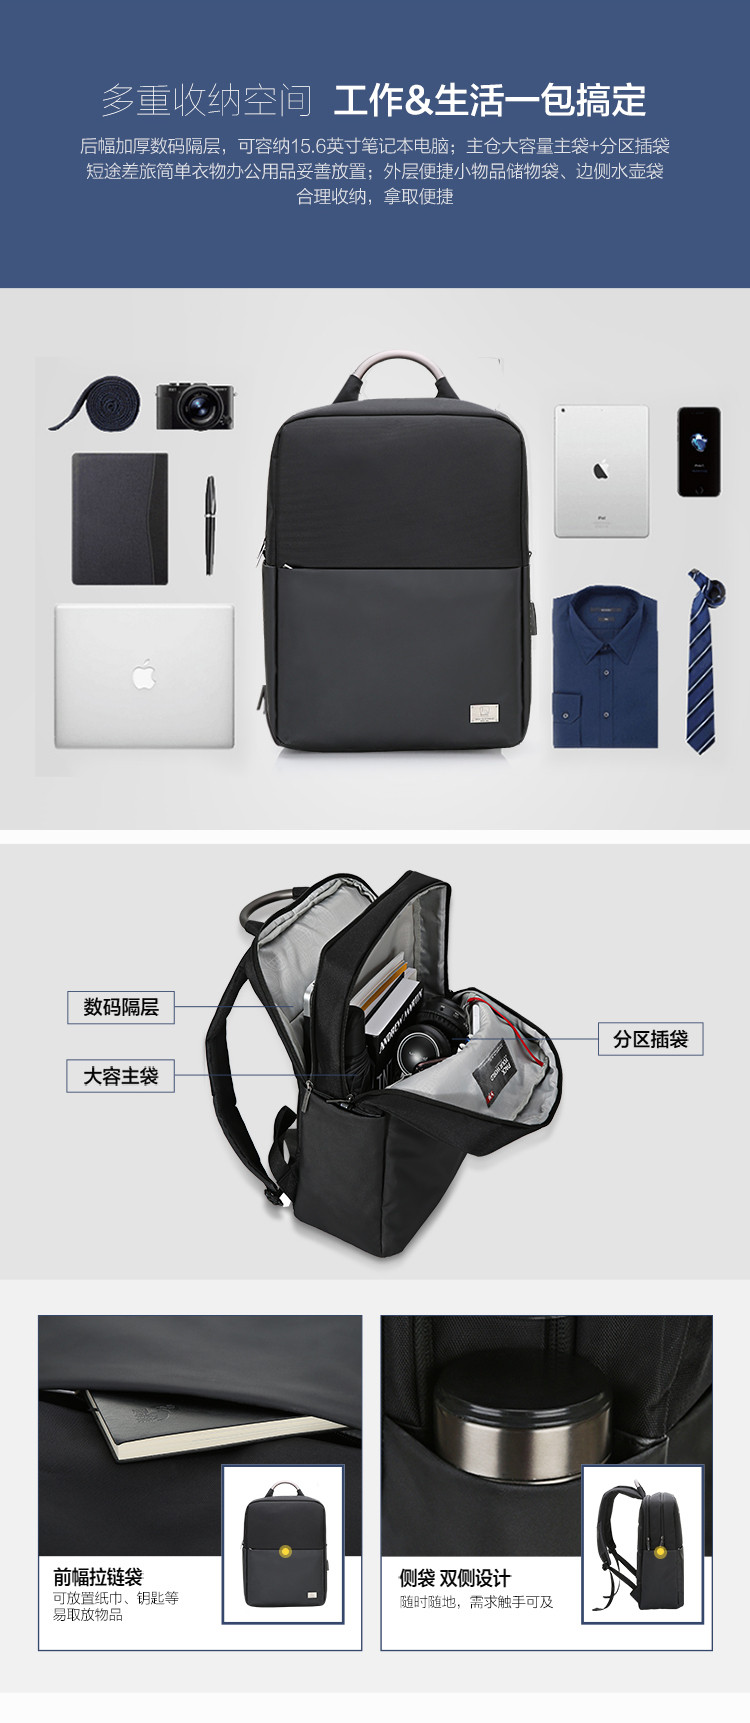 爱华仕 双肩包笔记本包大容量学生书包旅行包  15寸 OCB4696G